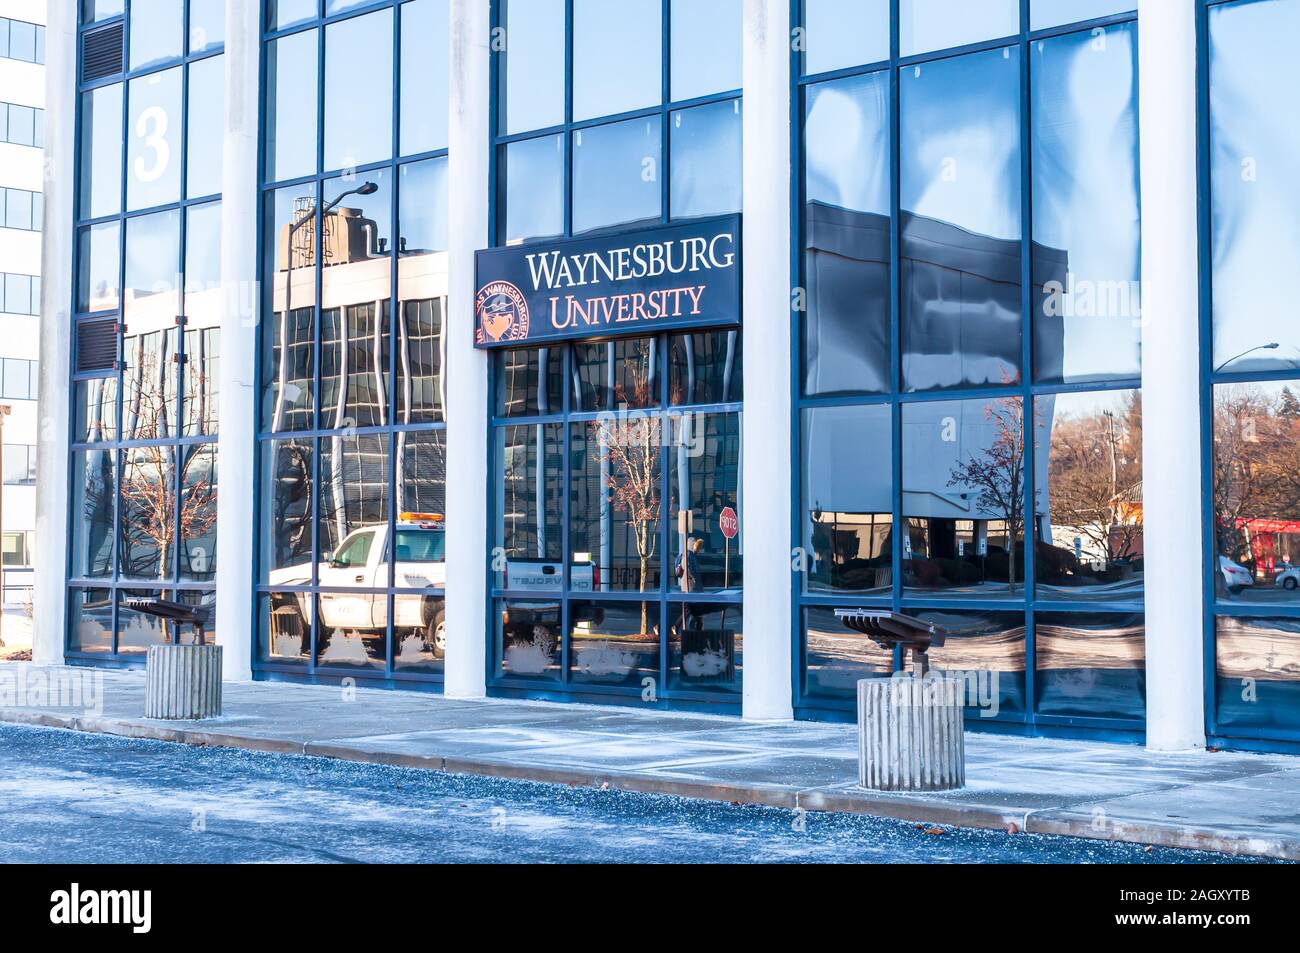 Una rama del campus de la Universidad de Penn Centro Waynesburg en este edificio 3 con un espejo reflejo de otro edificio sobre él, Wilkins TWP, Pensilvania, EE.UU. Foto de stock